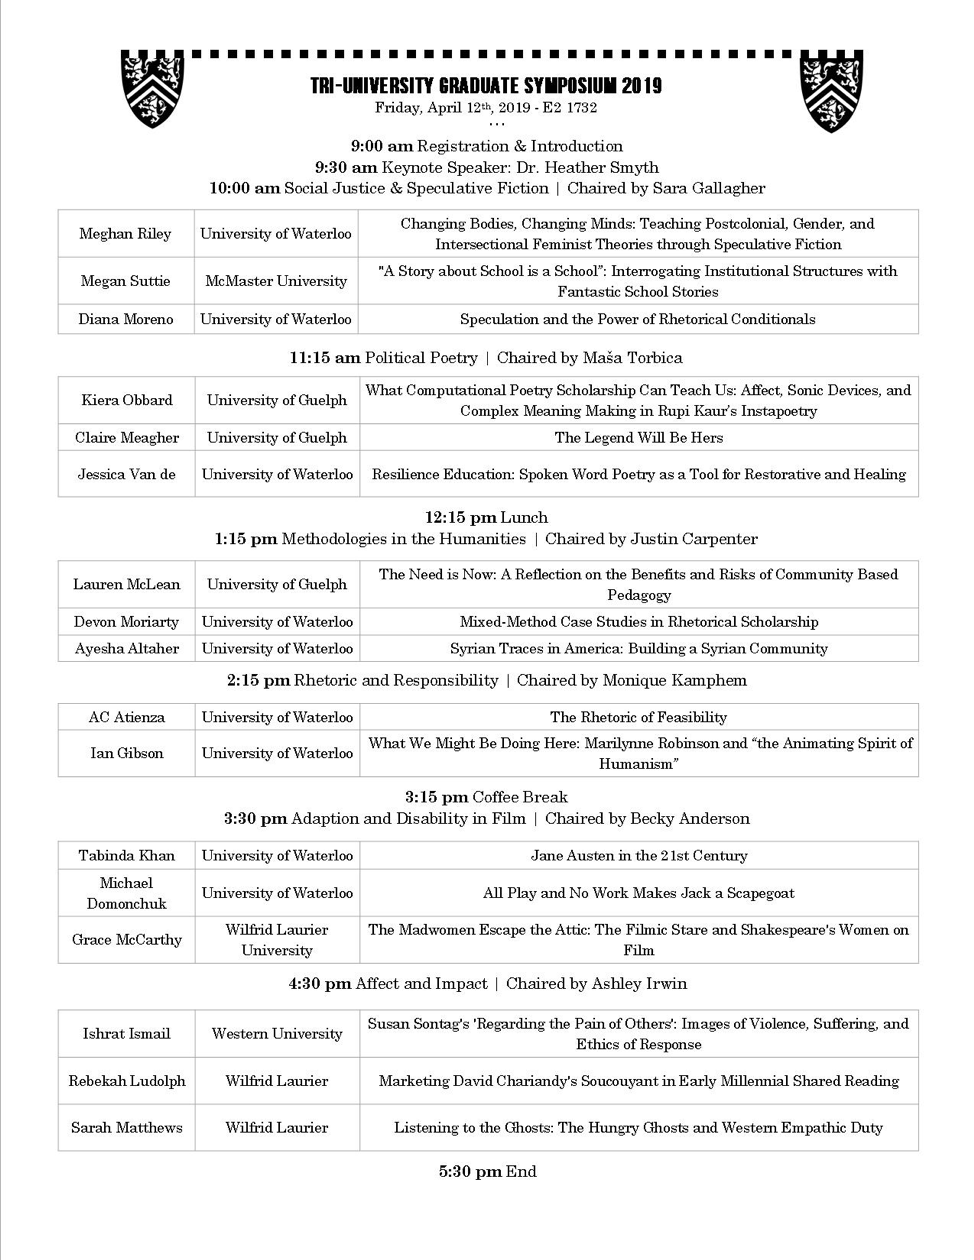 TUGS 2019 Schedule - PDF link below.